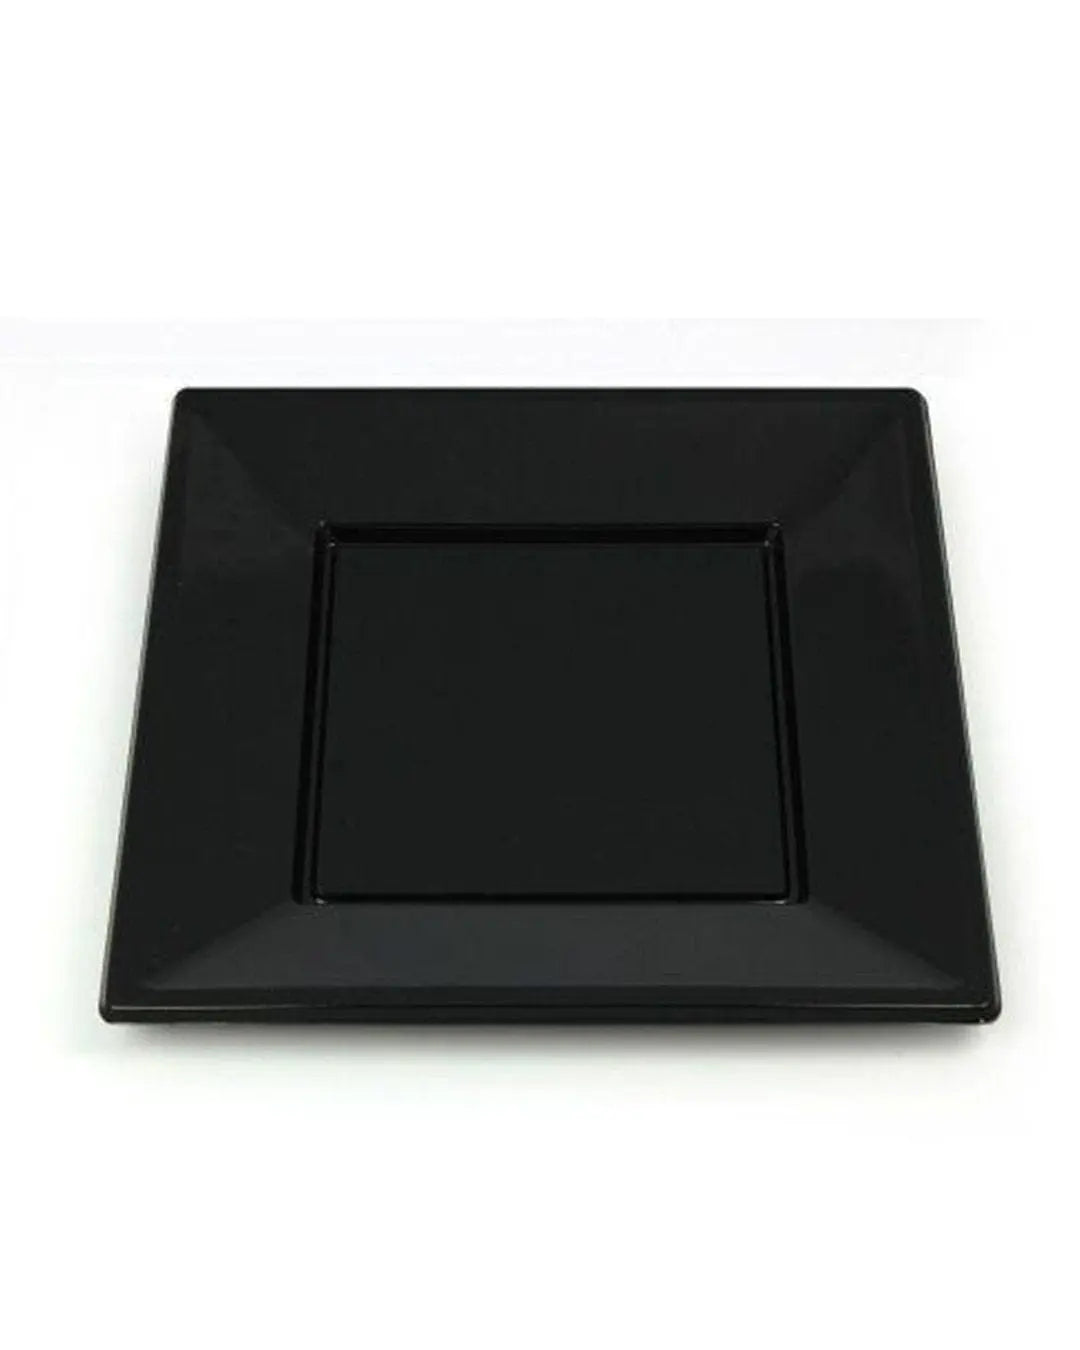 Square Black Plastic Plates 18cm Pack Size 10 Partyware 5033298005704